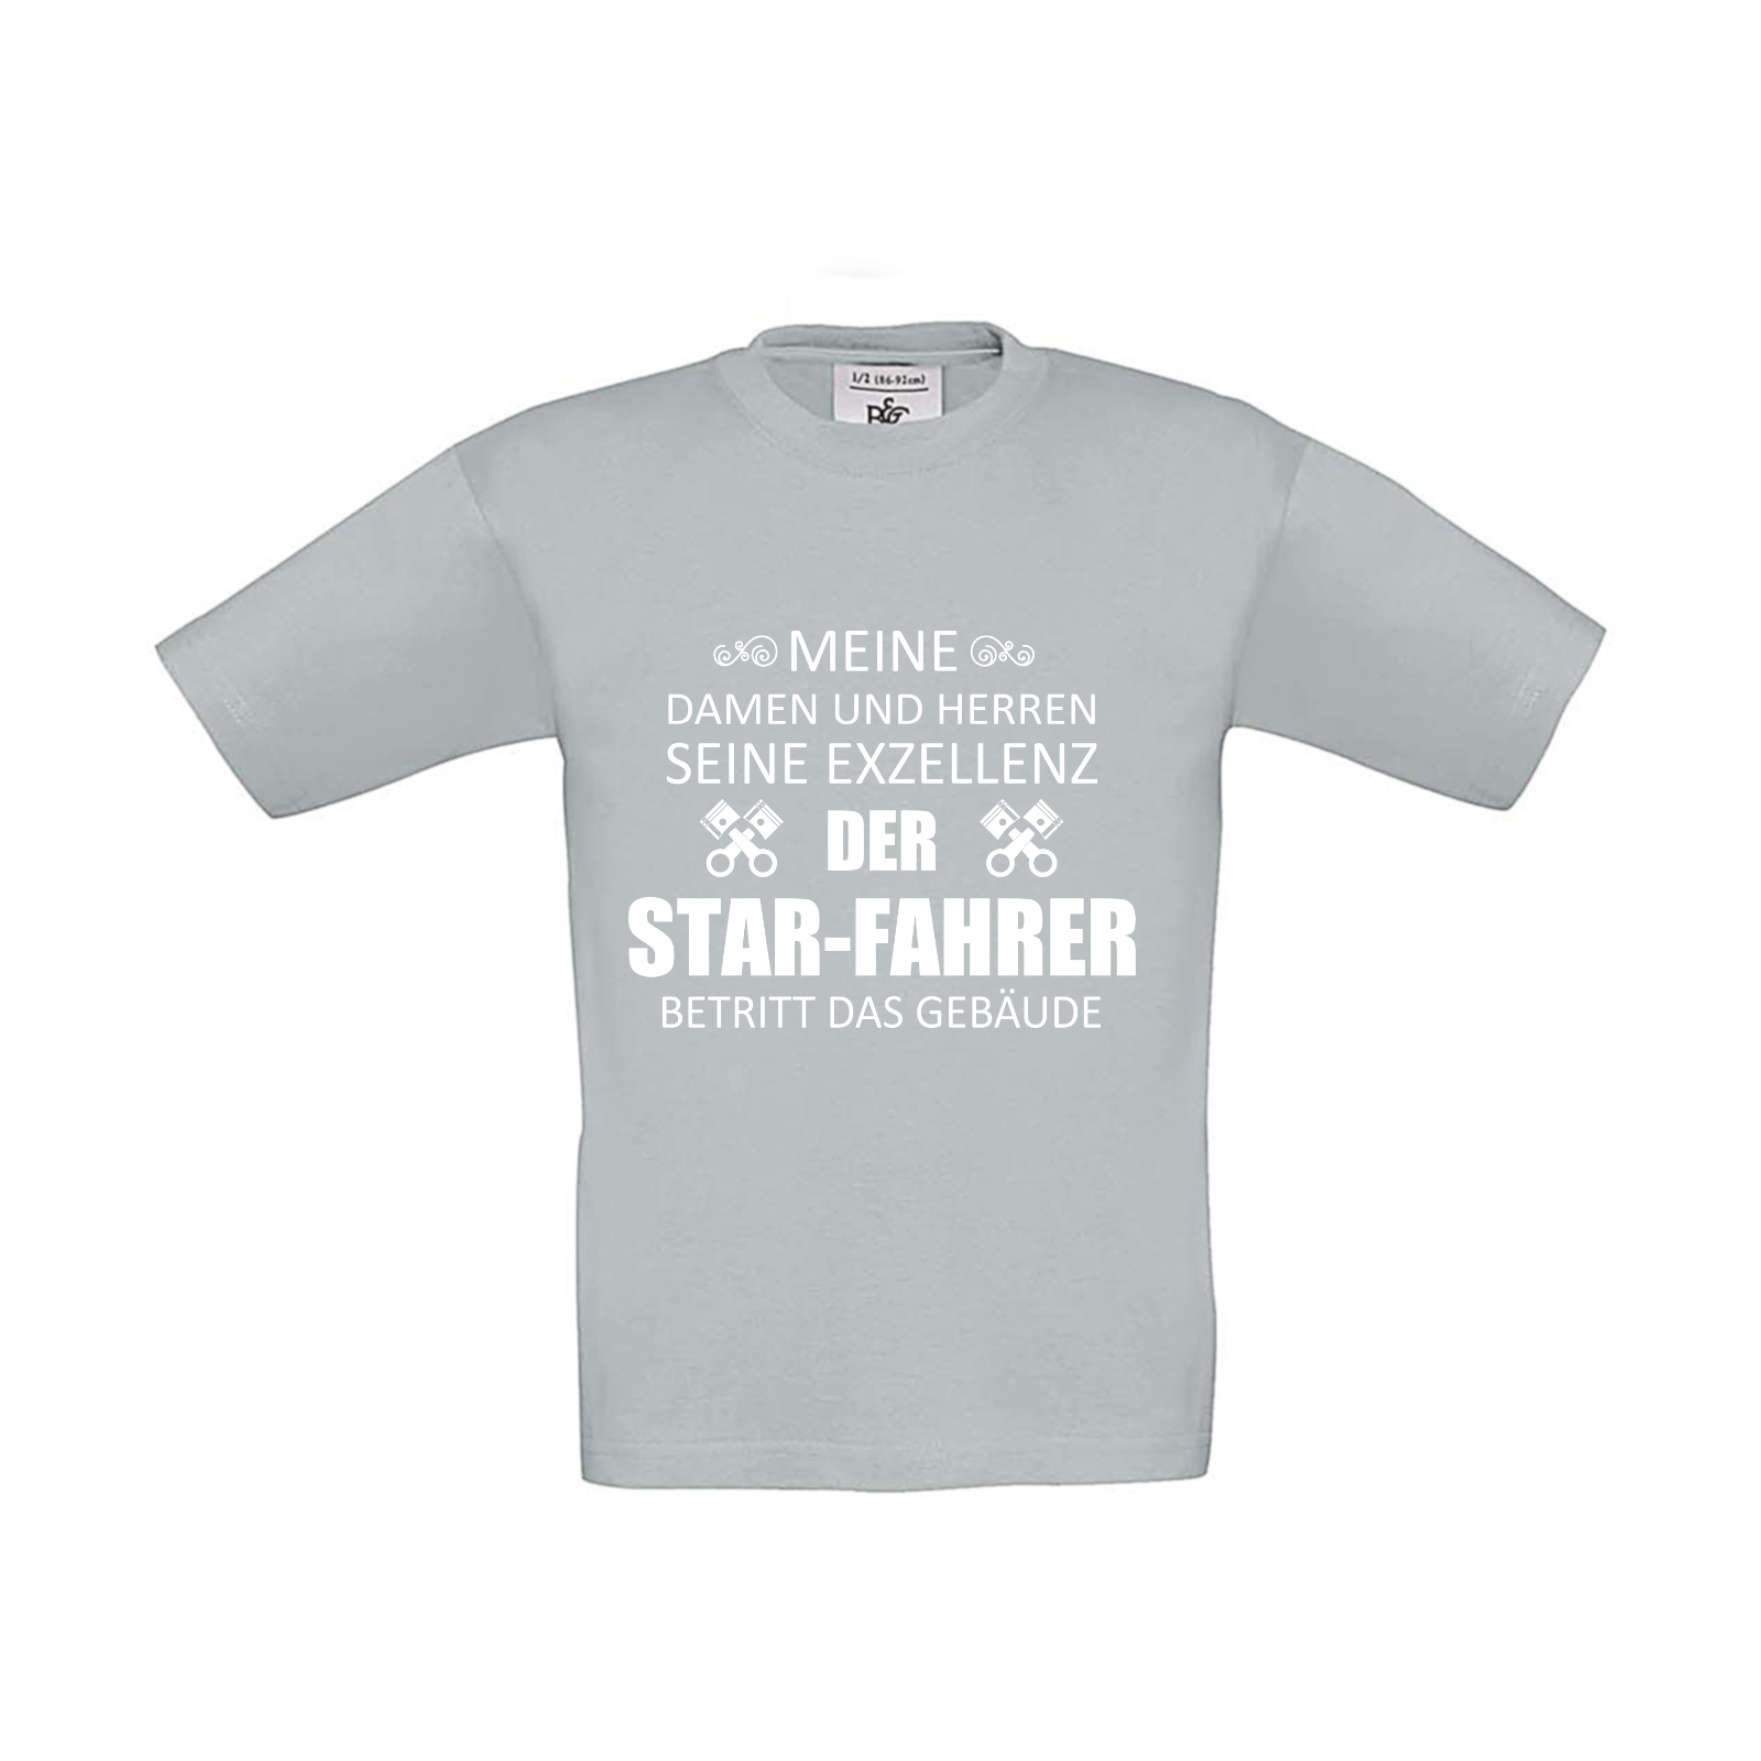 T-Shirt Kinder 2Takter - Eure Exzellenz der Star-Fahrer betritt das Gebäude